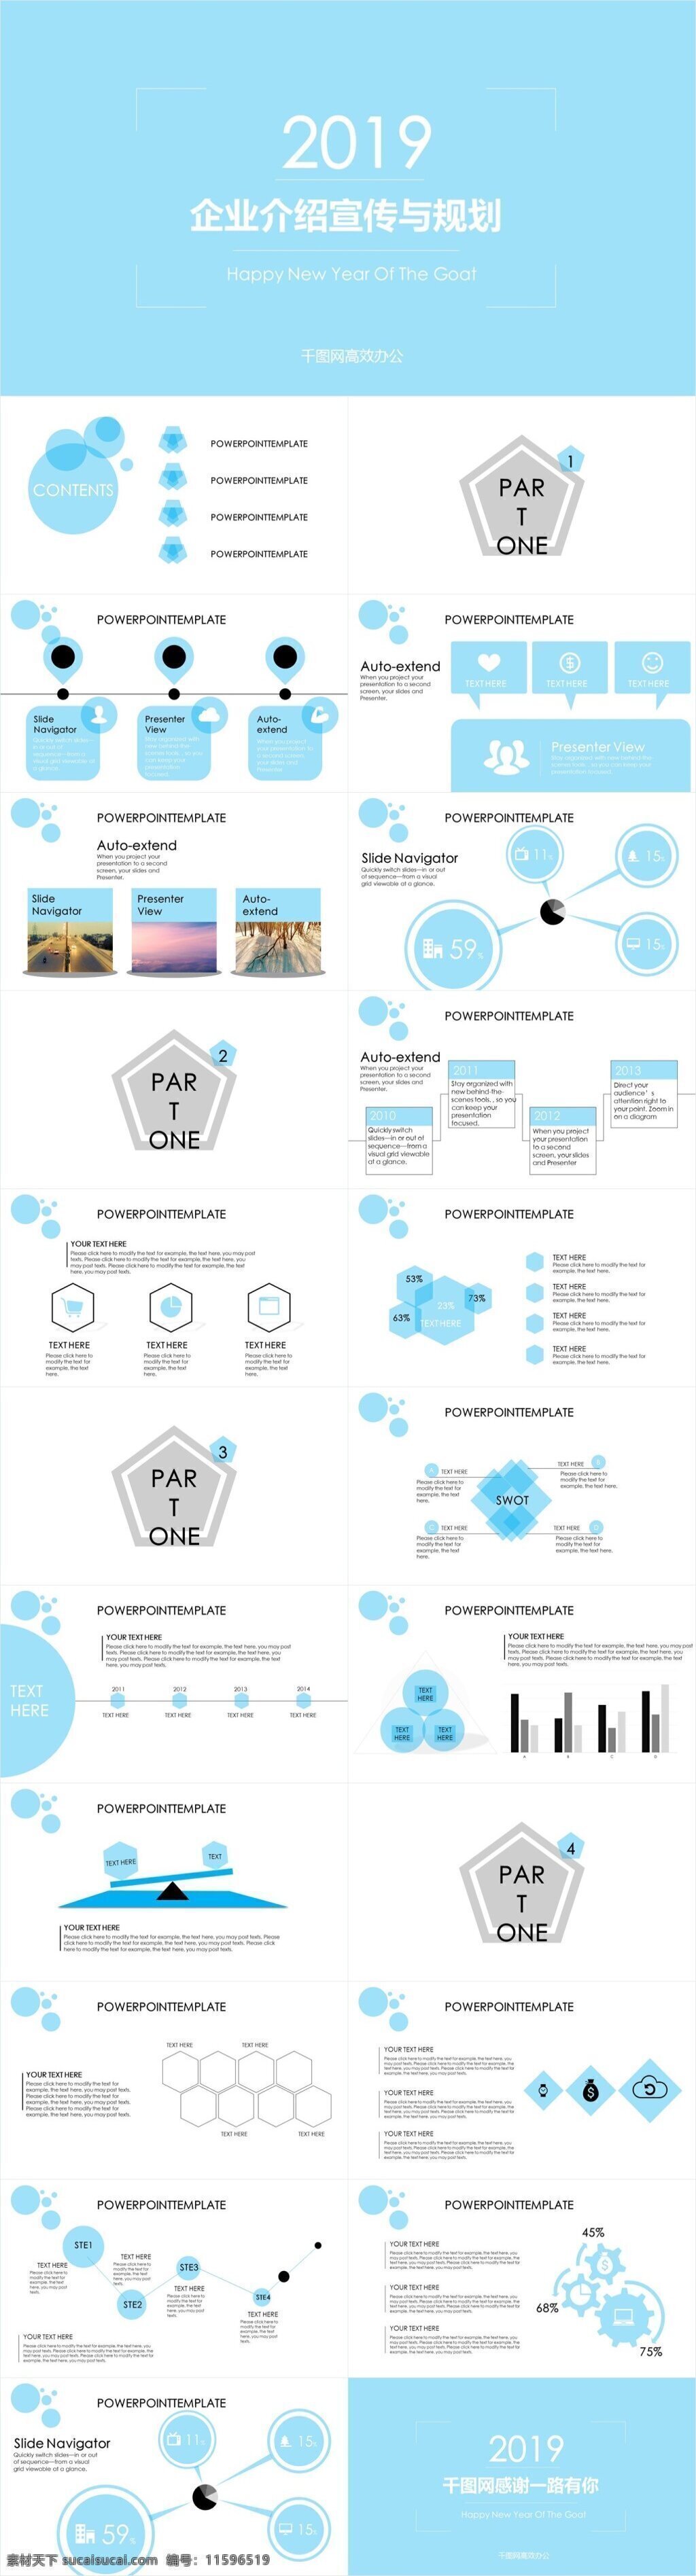 蓝色 企业 介绍 宣传 规划 免费 模板 企业宣传 制作 蓝色企业 ppt图表 策划 创意 ppt素材 项目策划